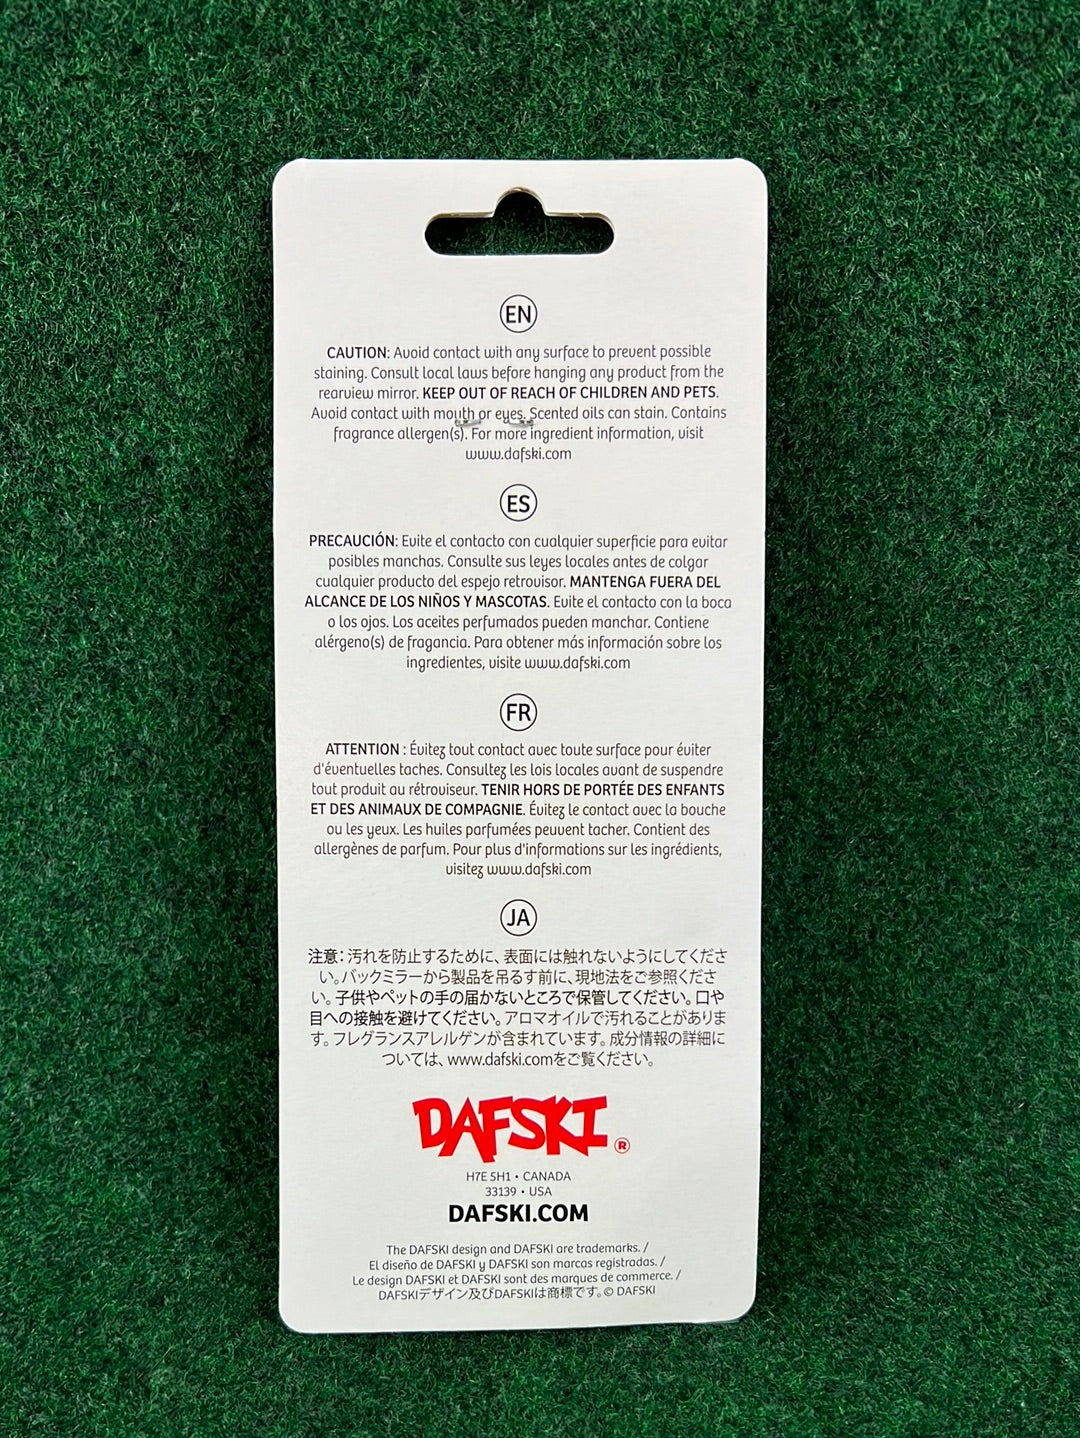 DAFSKI -  Made in Japan Hanging Air Freshener